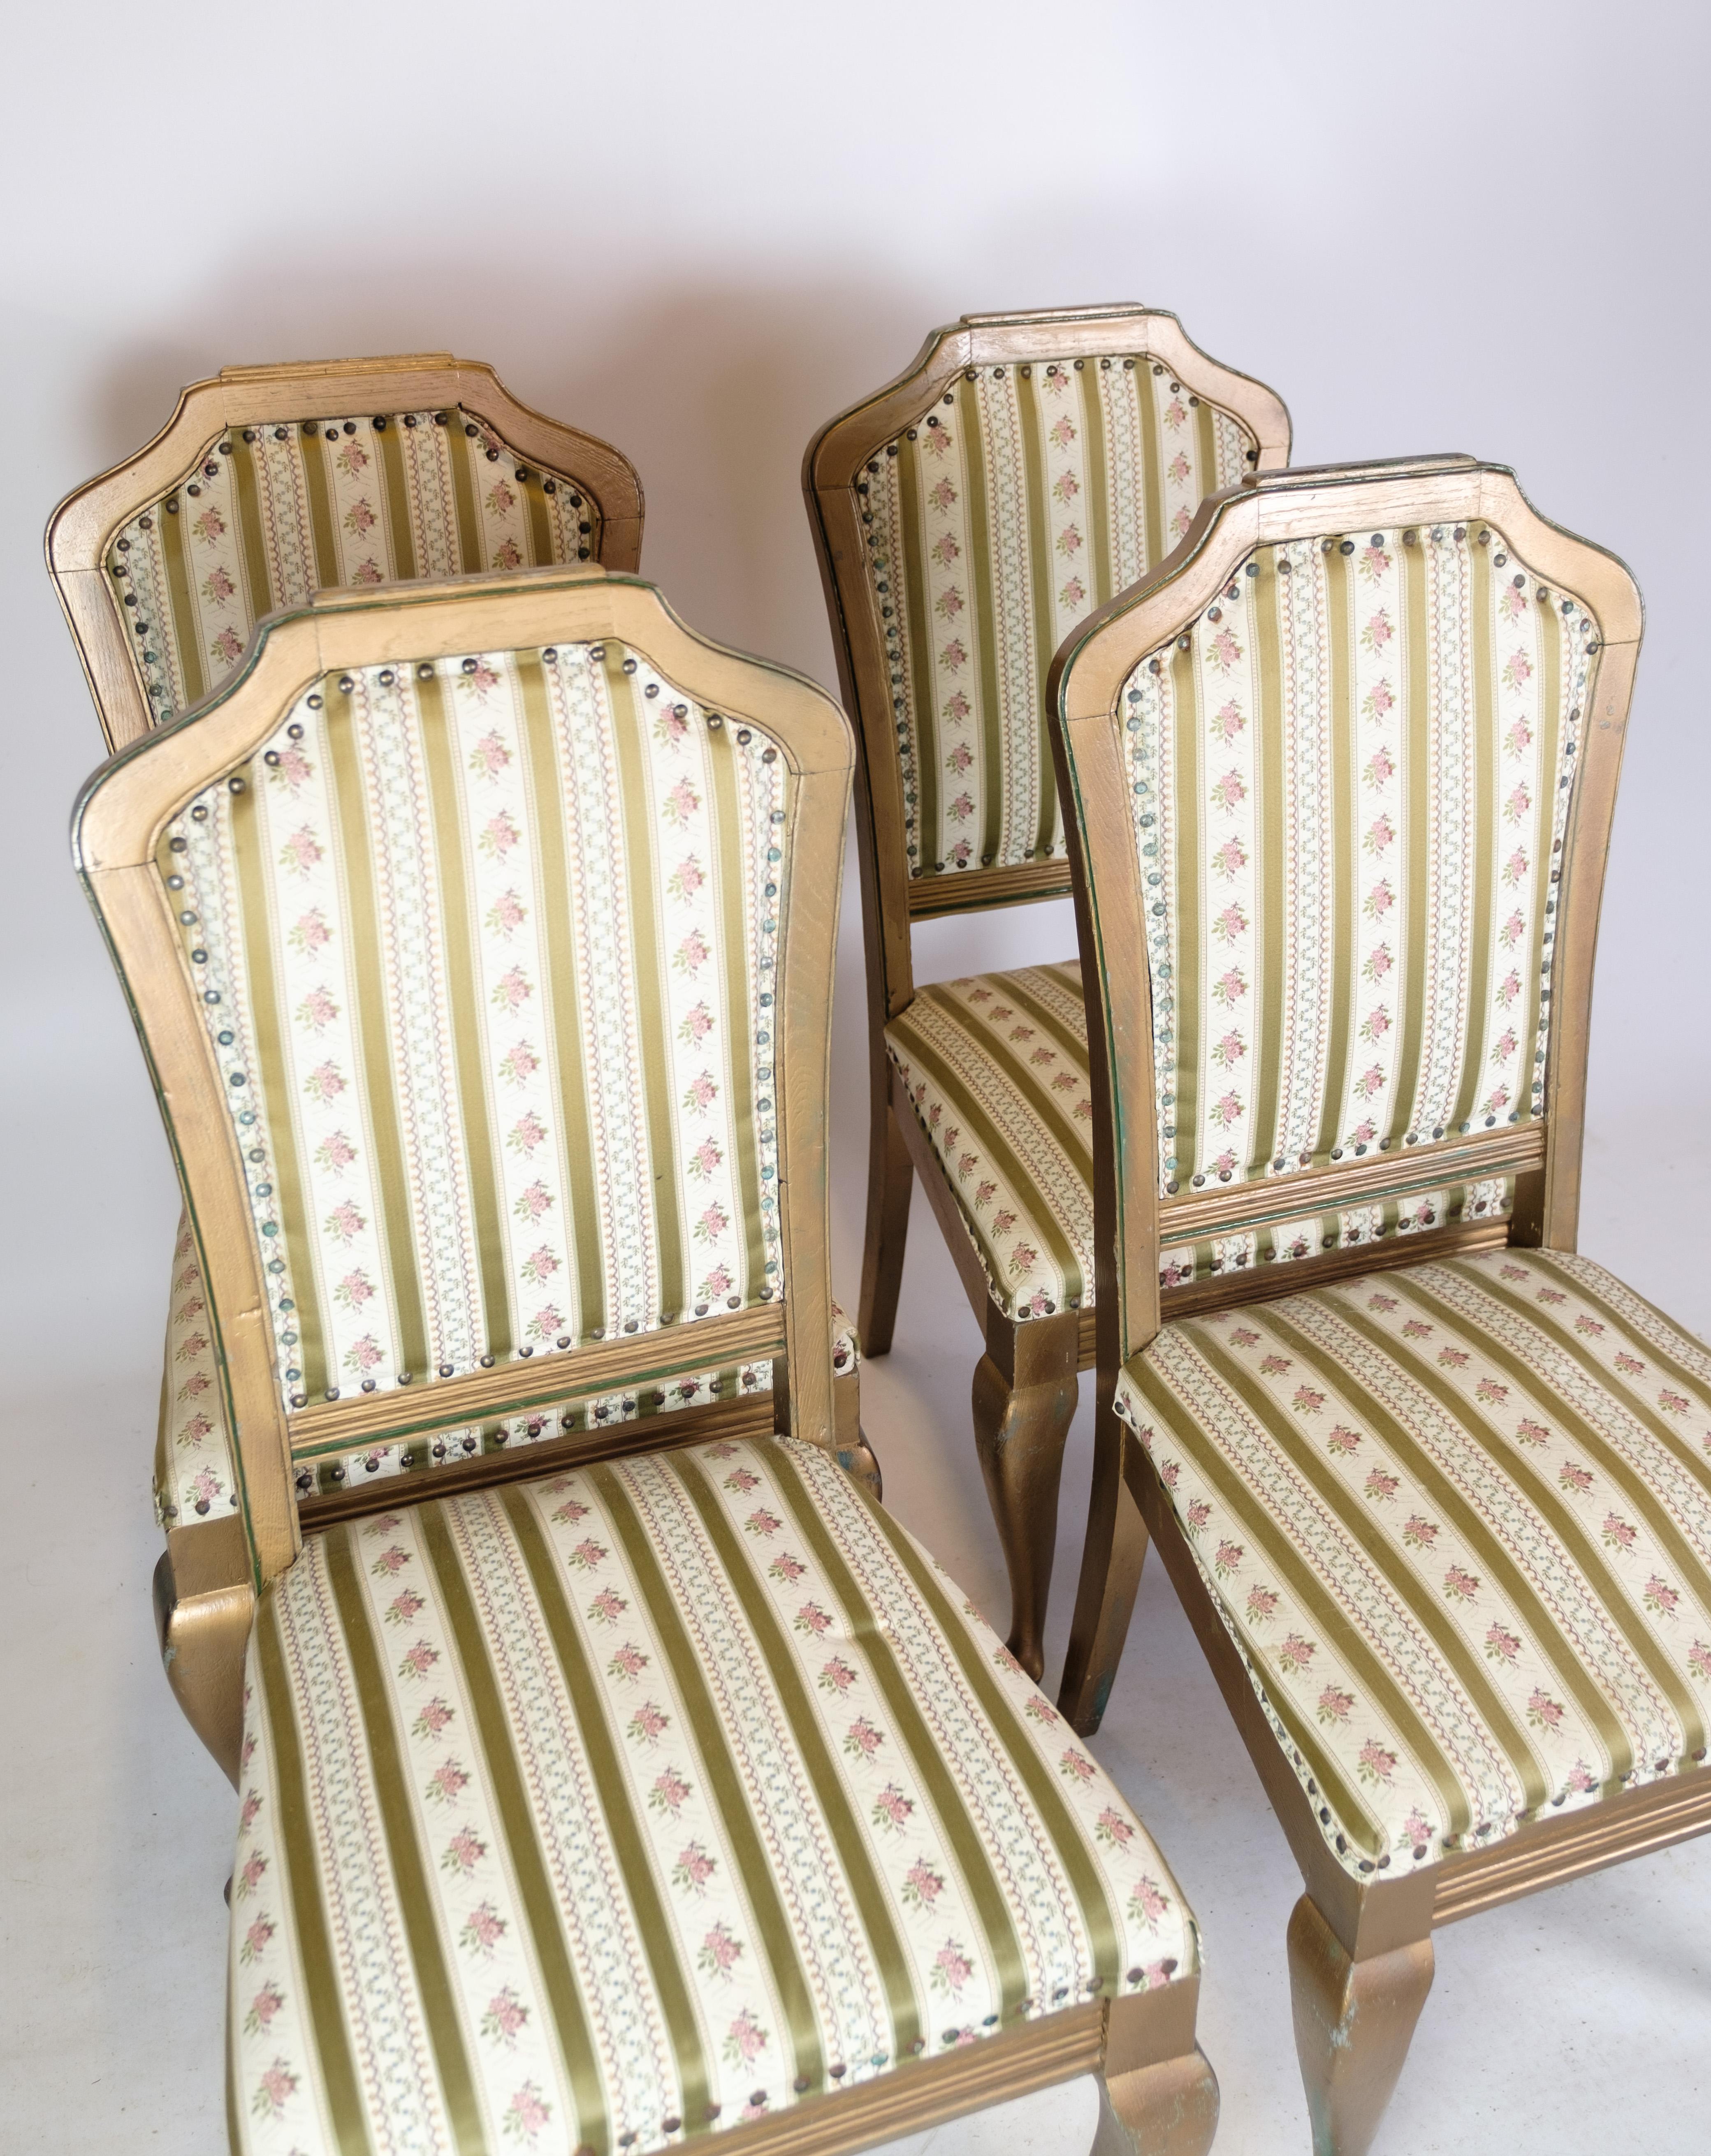 Satz von vier antiken Rokokostühlen aus vergoldetem Holz mit gestreiftem Stoff aus den 1930er Jahren.
Abmessungen in cm: H102 B:48 D:45 SH:42